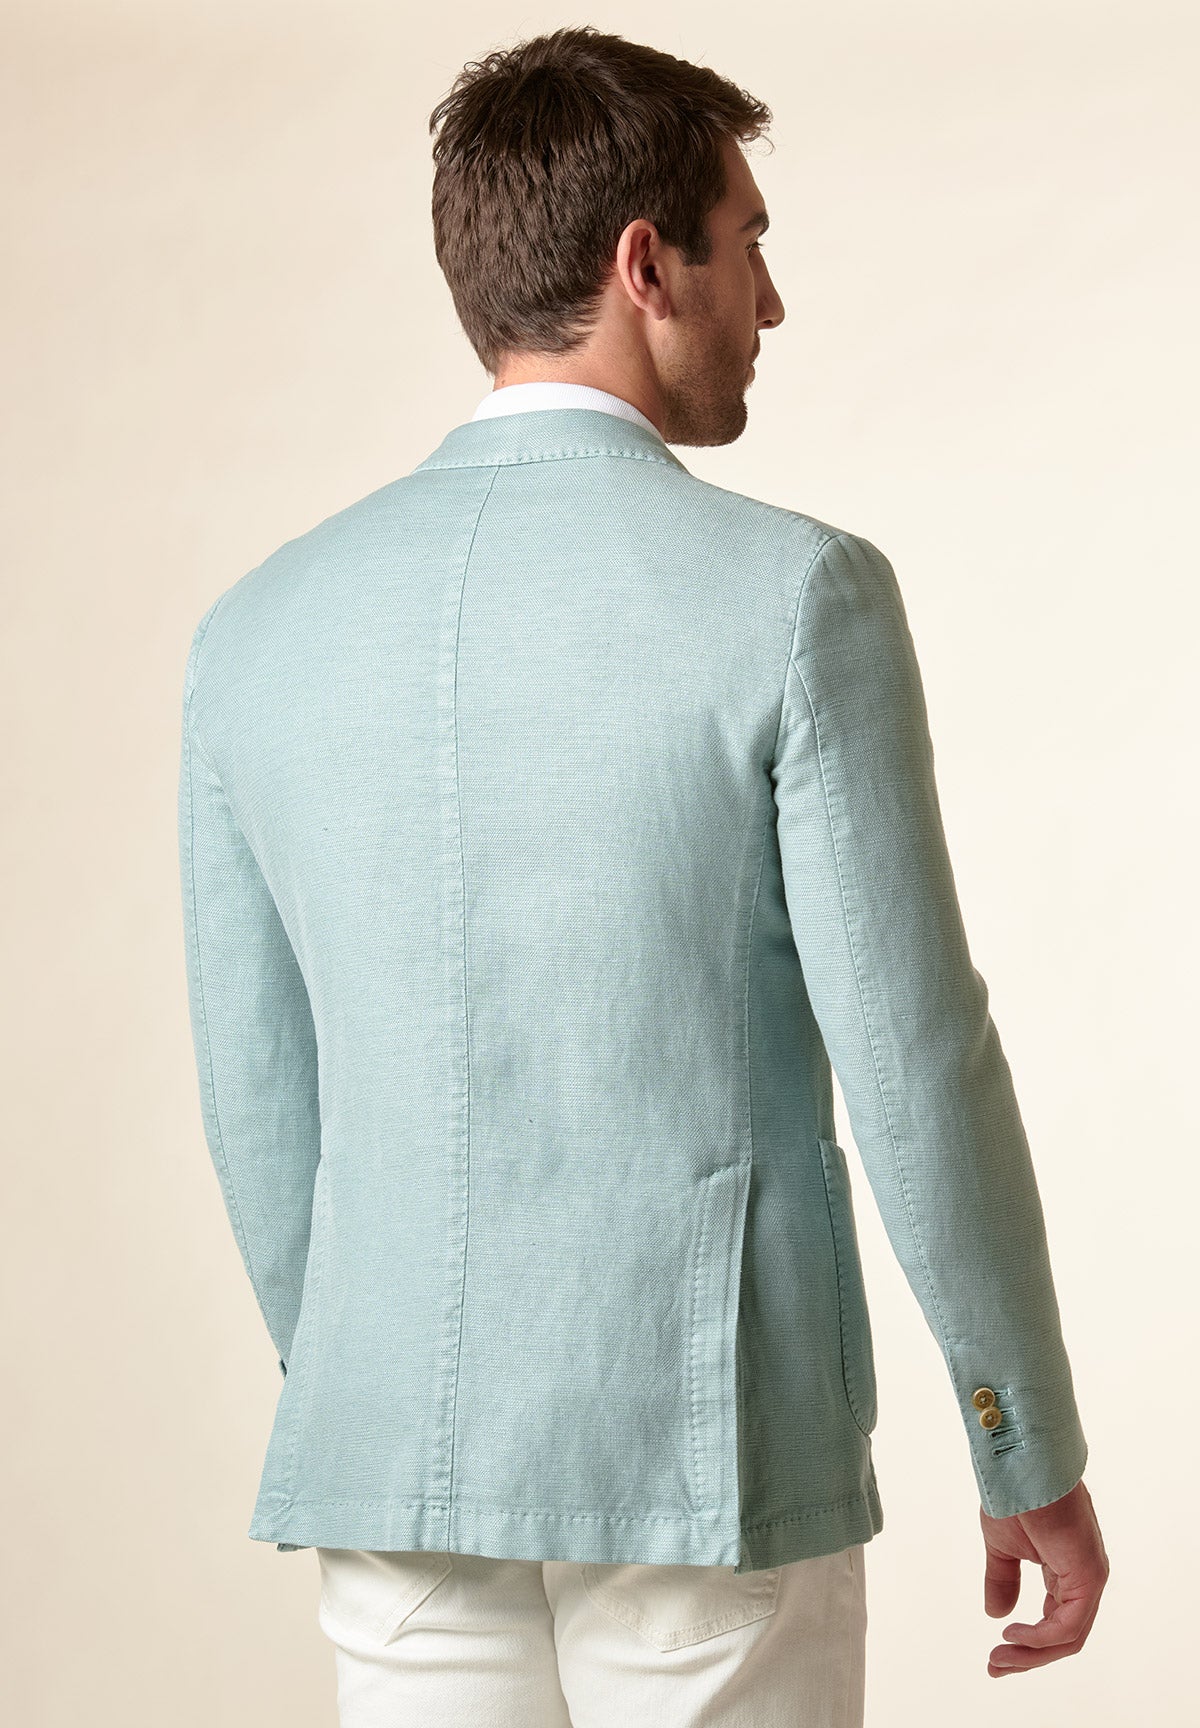 Aquagrüne, individuell geschnittene Jacke aus Leinen-Baumwolle